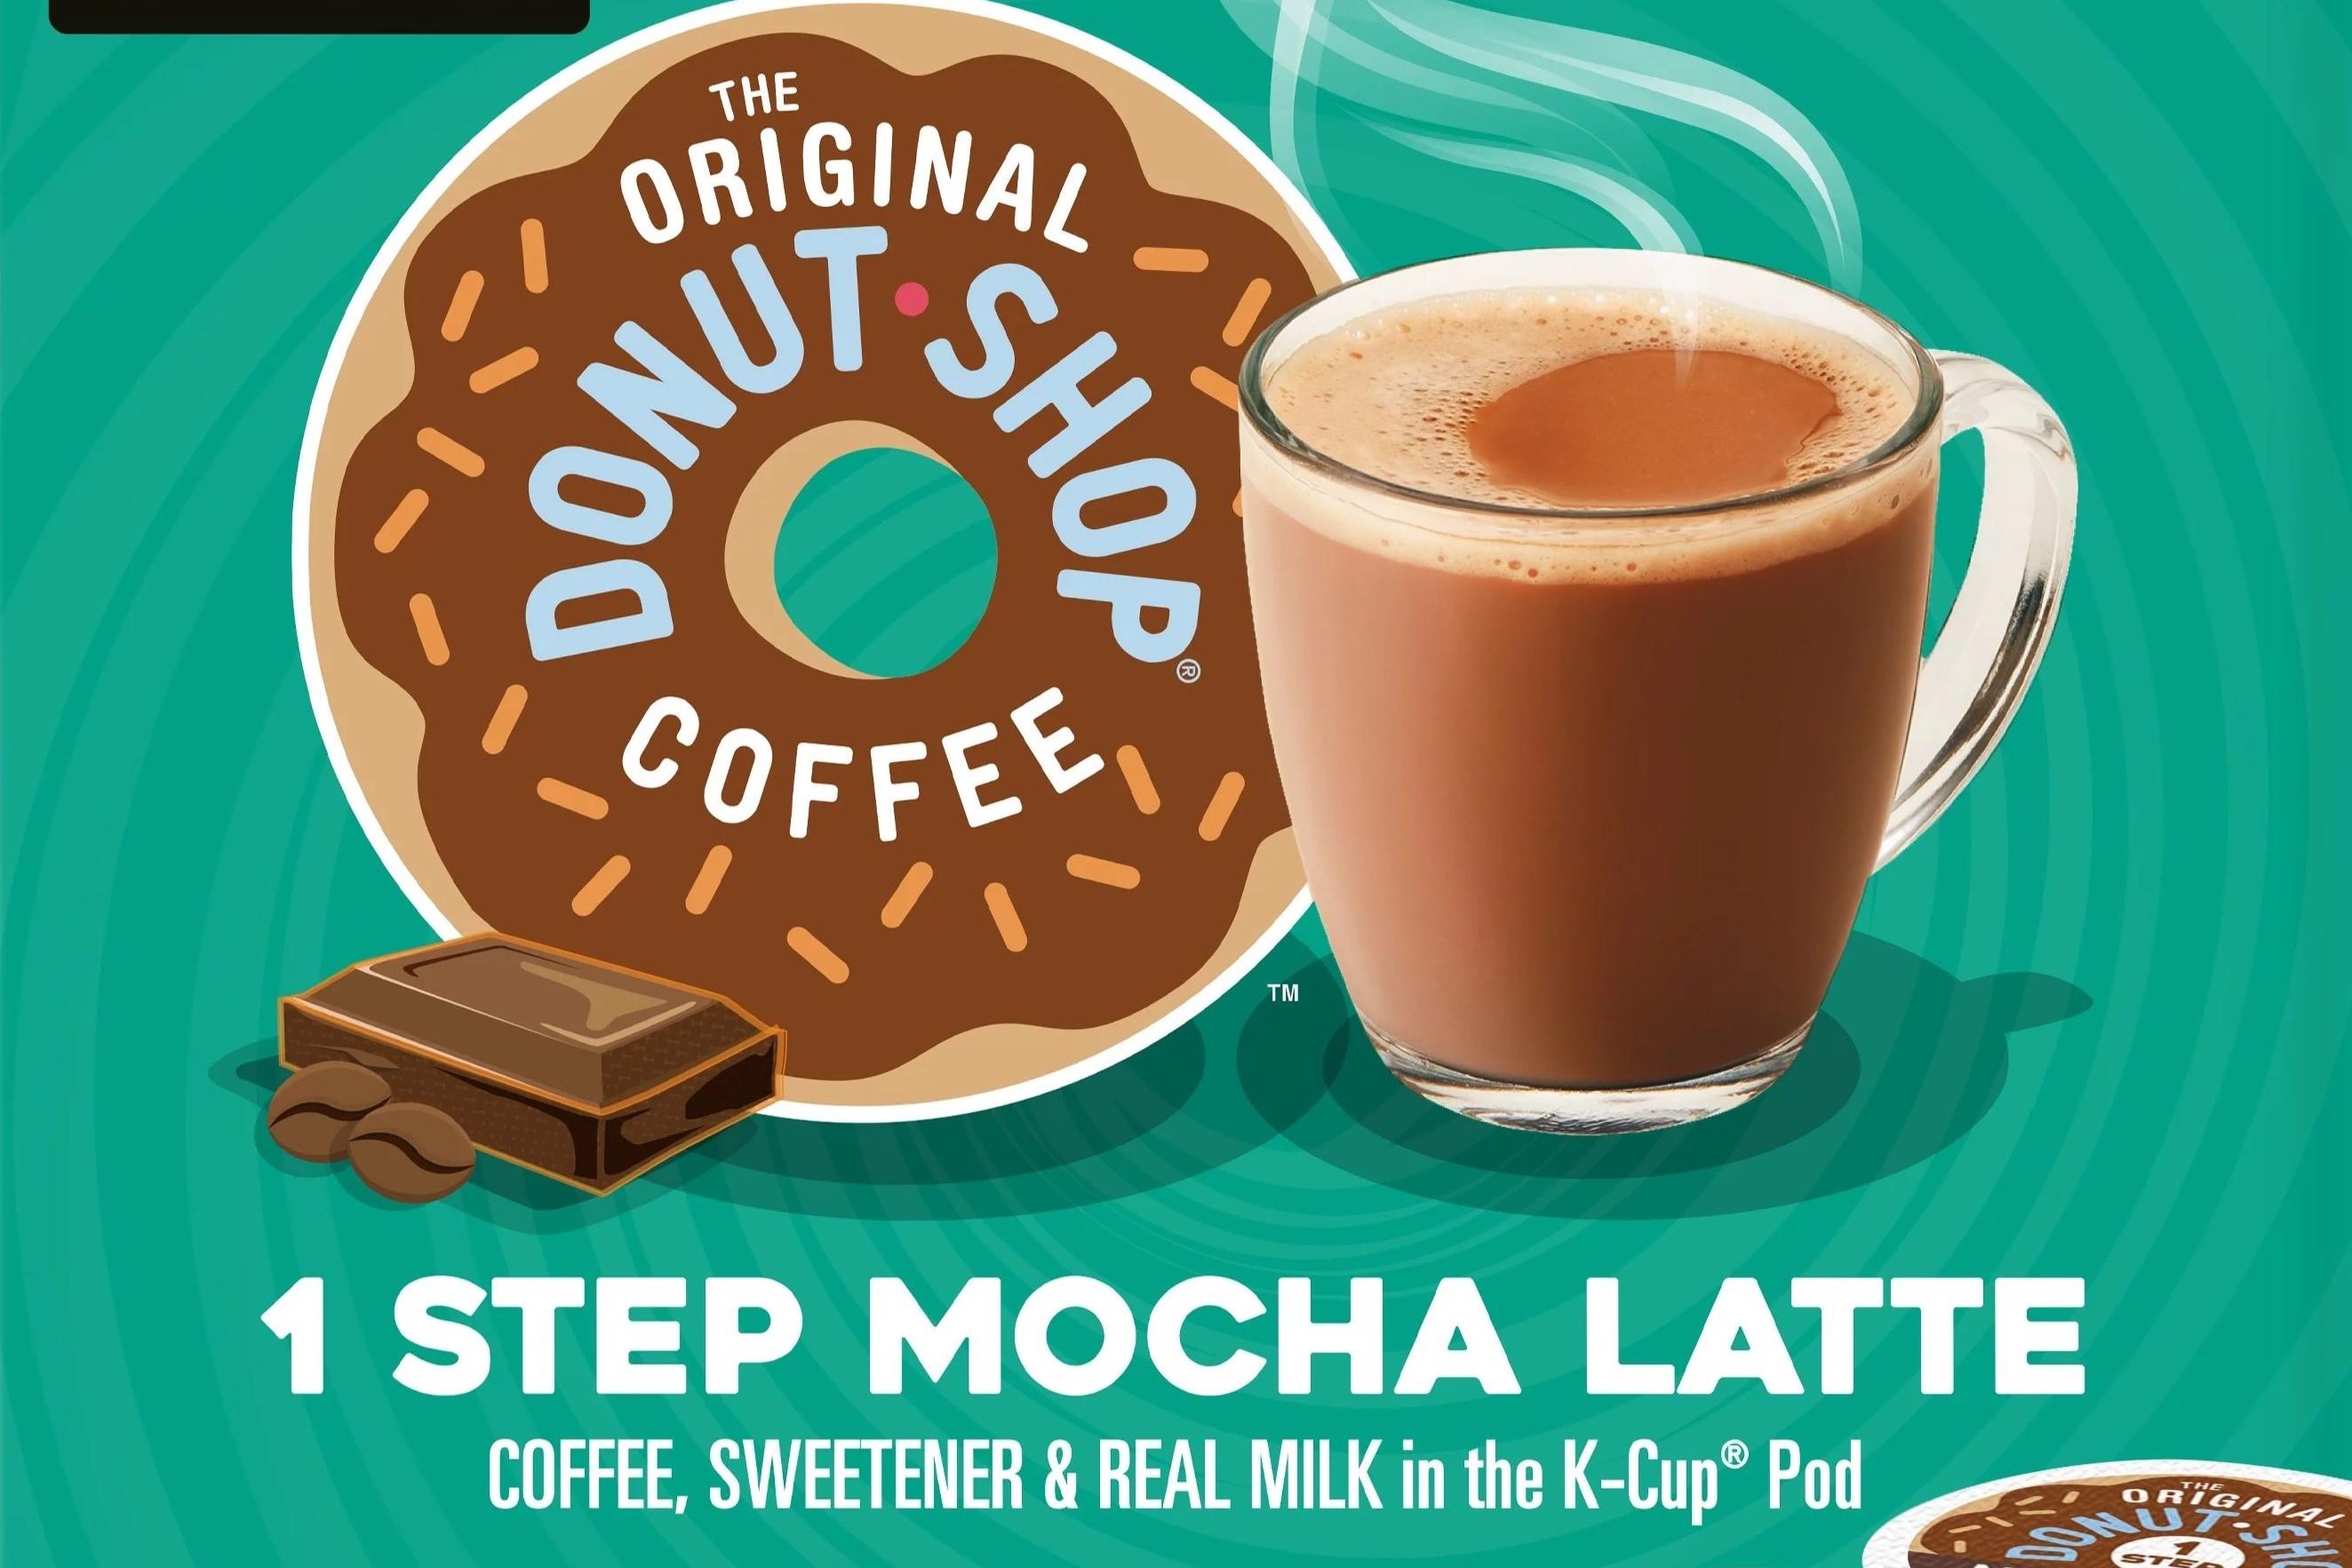 19-the-original-donut-shop-mocha-latte-nutrition-facts